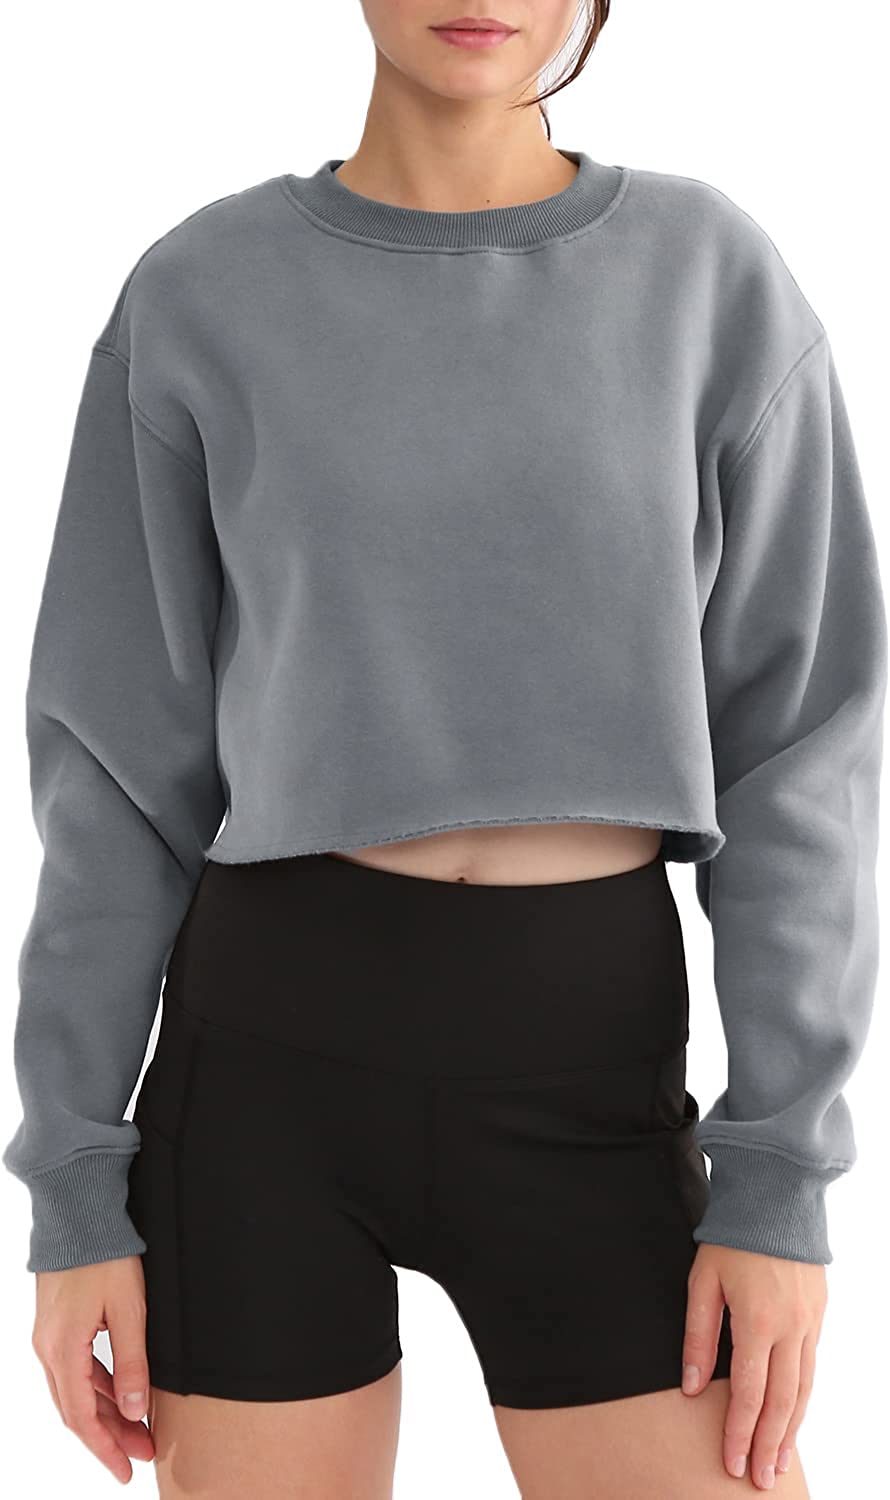 Grey Basic Cropped Sweatshirt